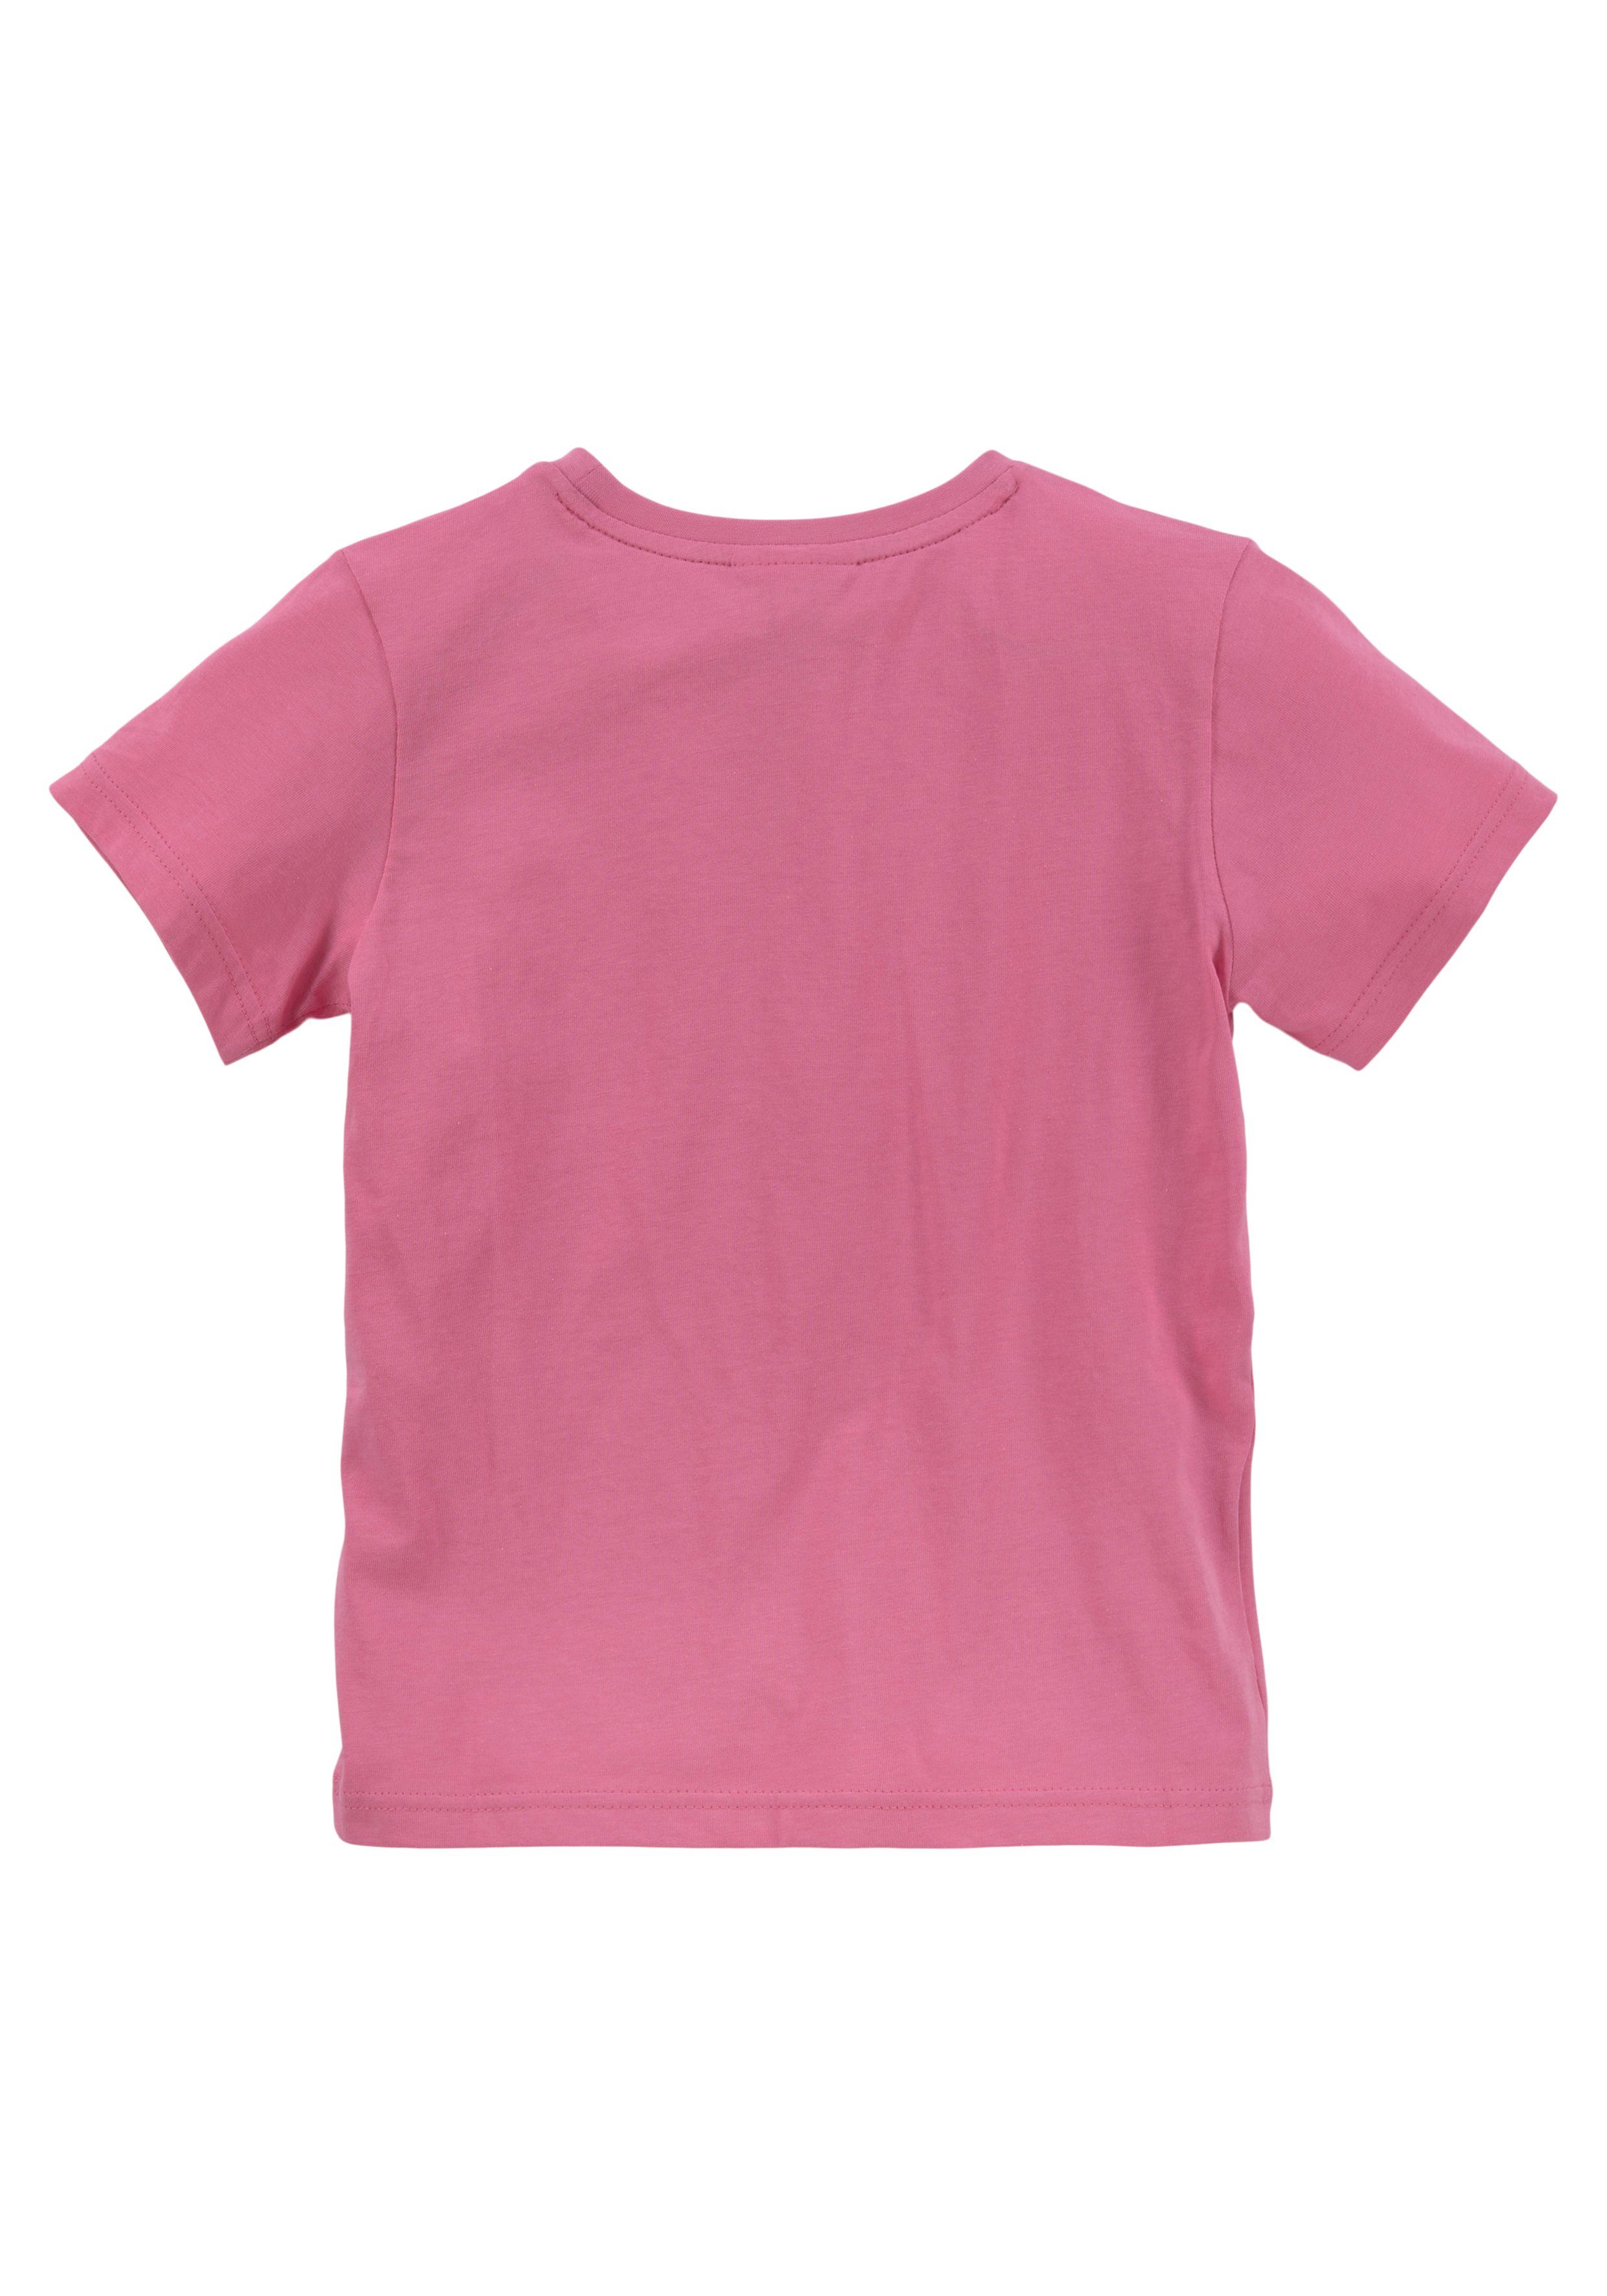 Rundhalsausschnitt Lacoste reseda T-Shirt pink mit